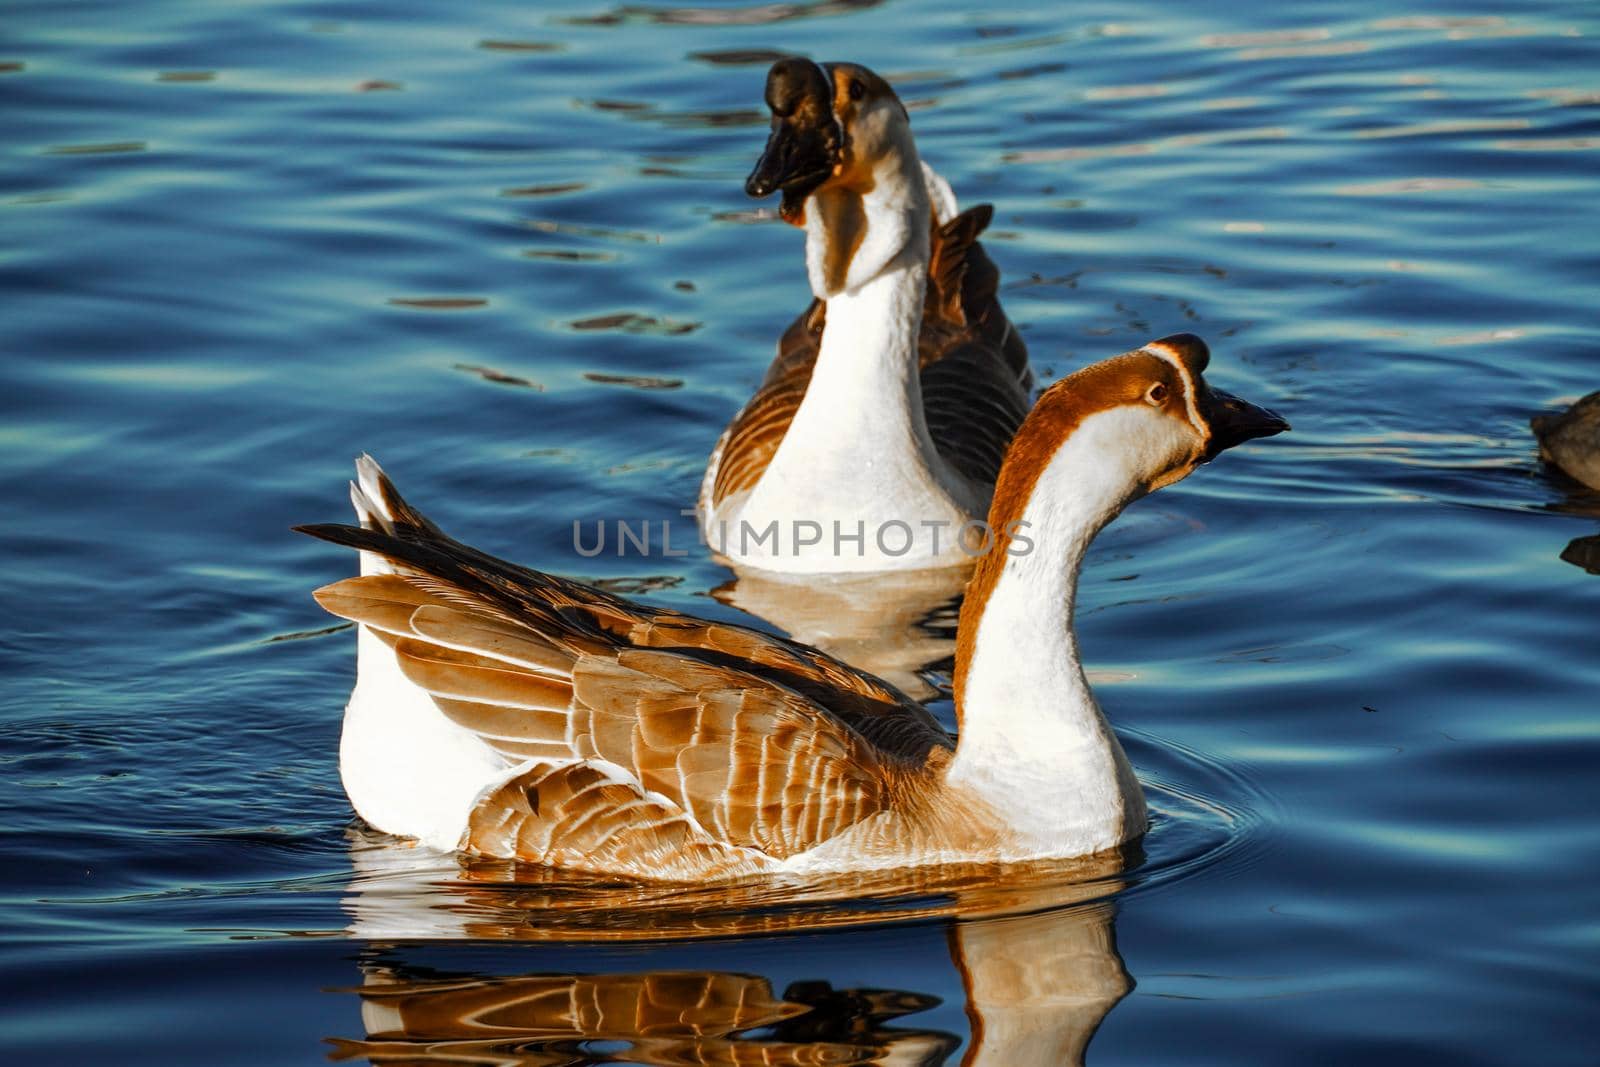 Goose on a lake by Bonandbon